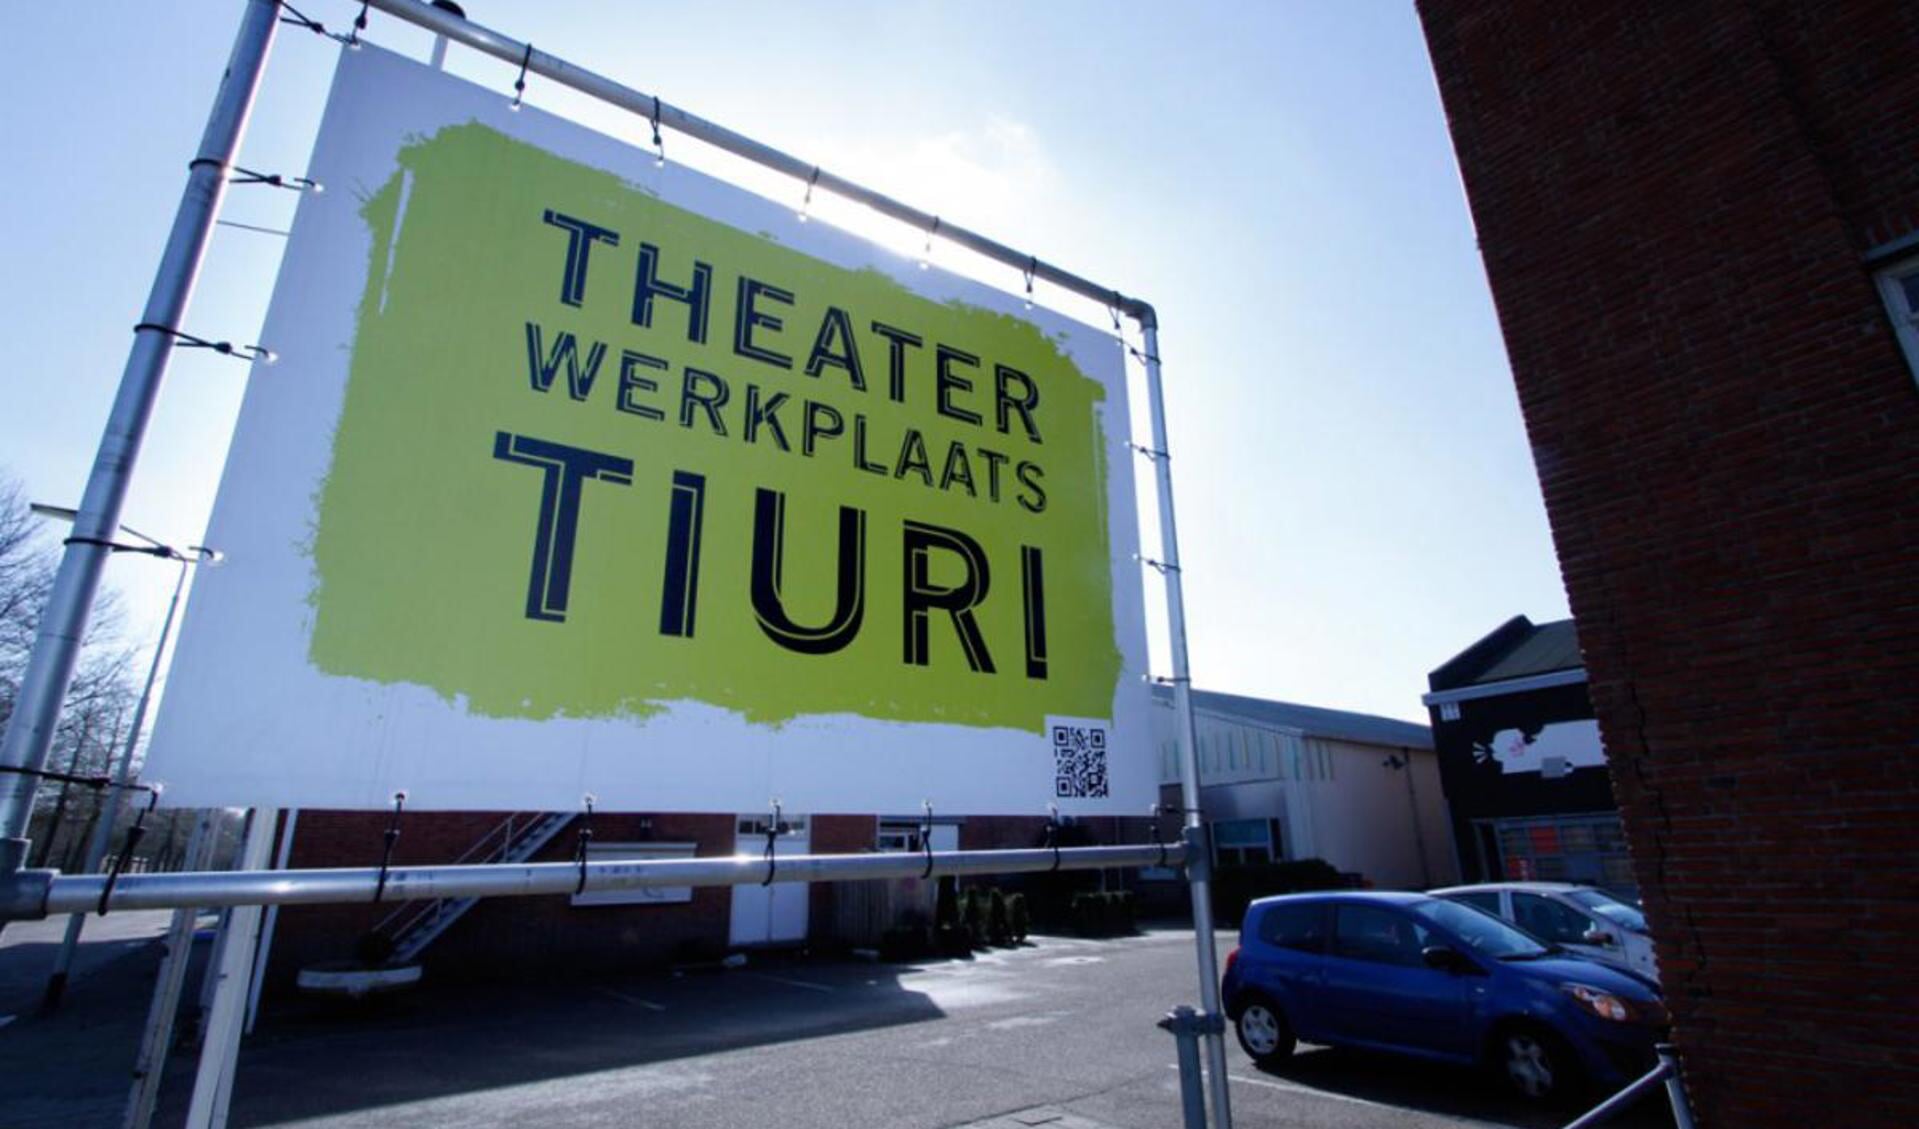 Theaterwerkplaats Tiuri aan de Speelhuislaan. foto Wijnand Nijs